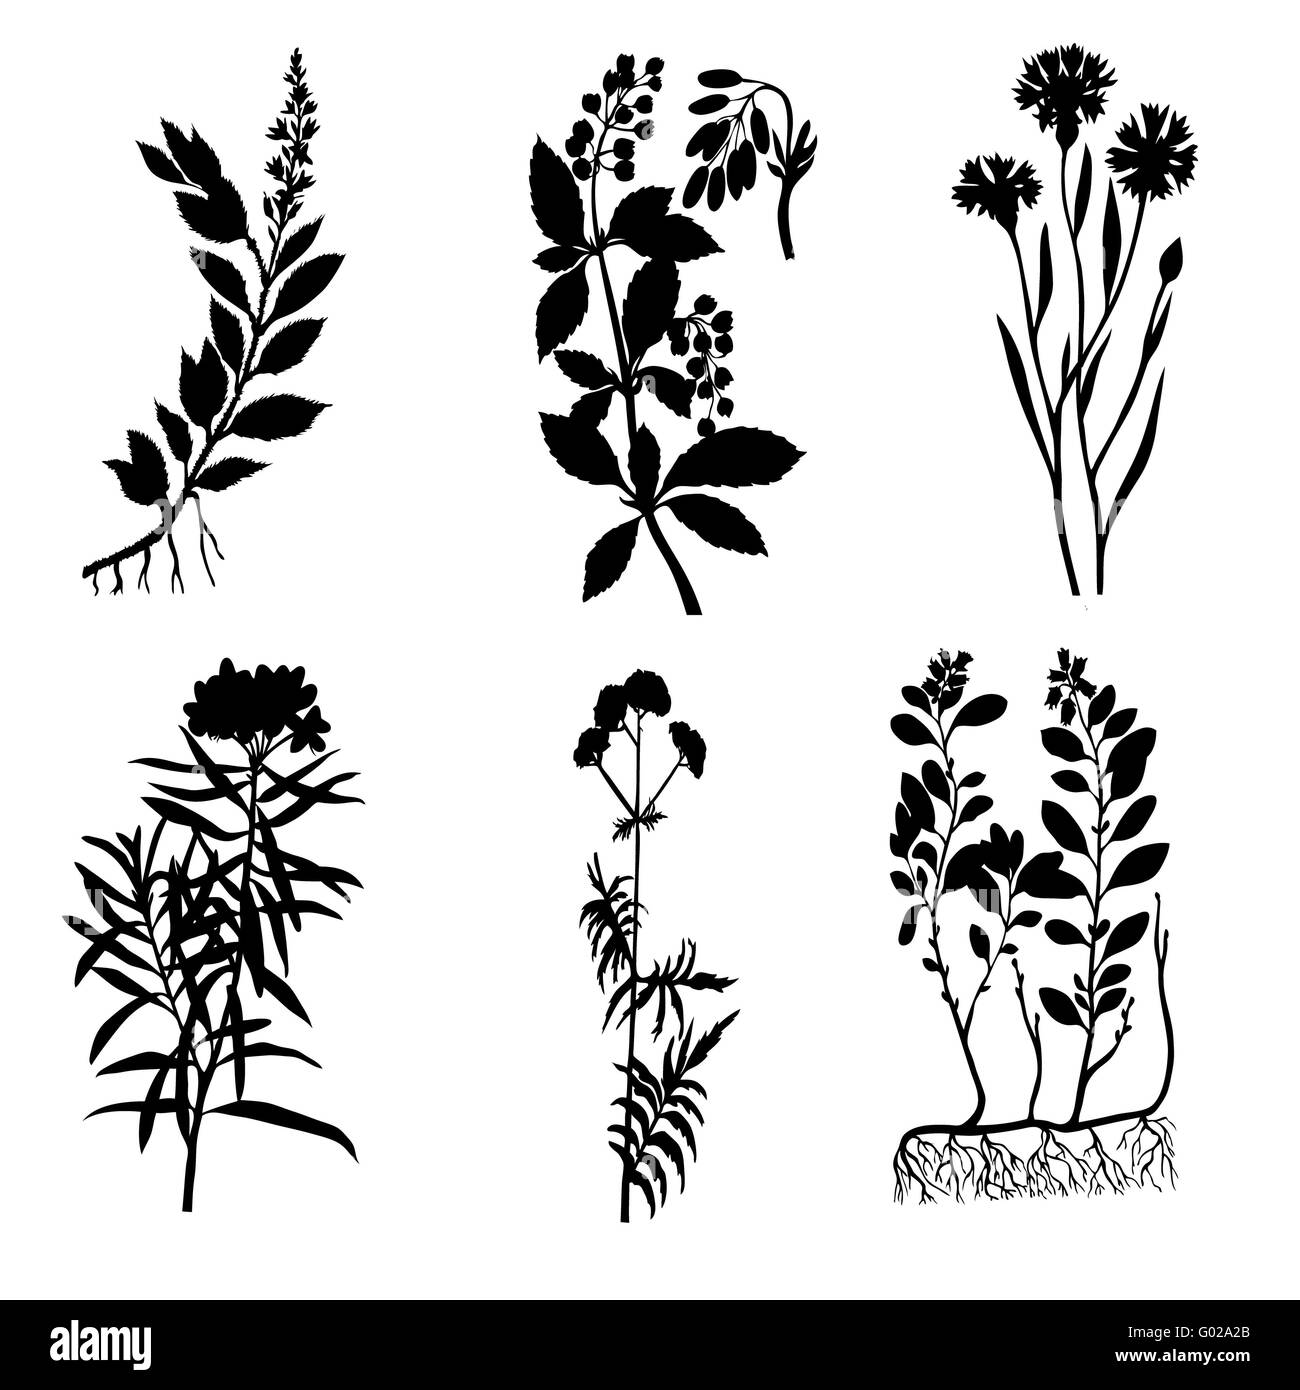 Plantas de valeriana Imágenes de stock en blanco y negro - Alamy